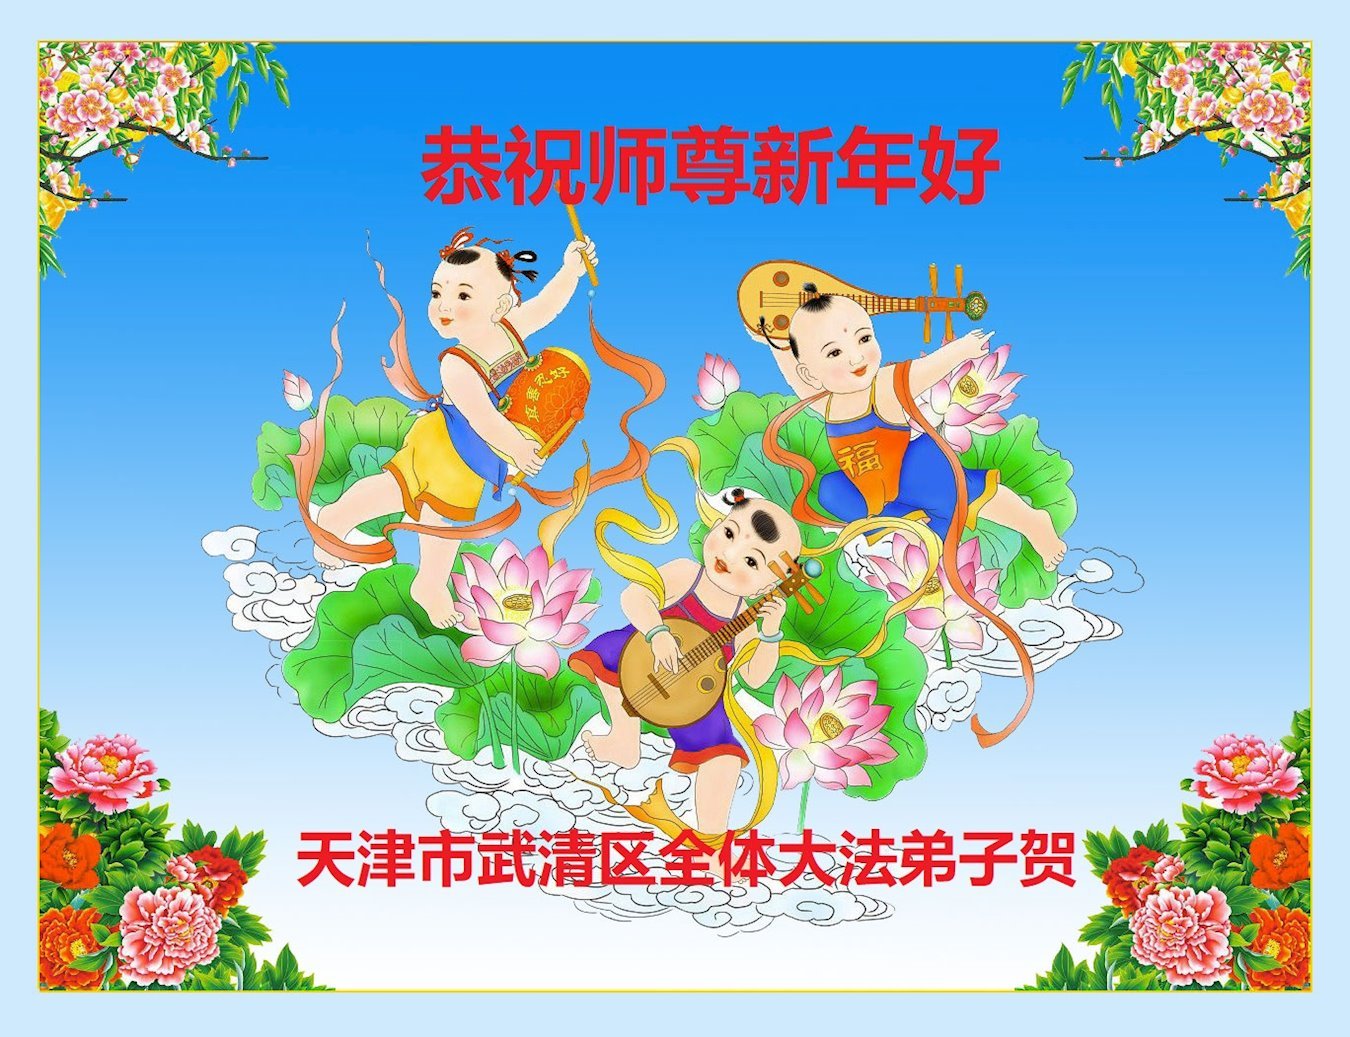 Image for article Les pratiquants de Falun Dafa de Tianjin souhaitent respectueusement au vénérable Maître Li Hongzhi un bon Nouvel An chinois ! (19 vœux)